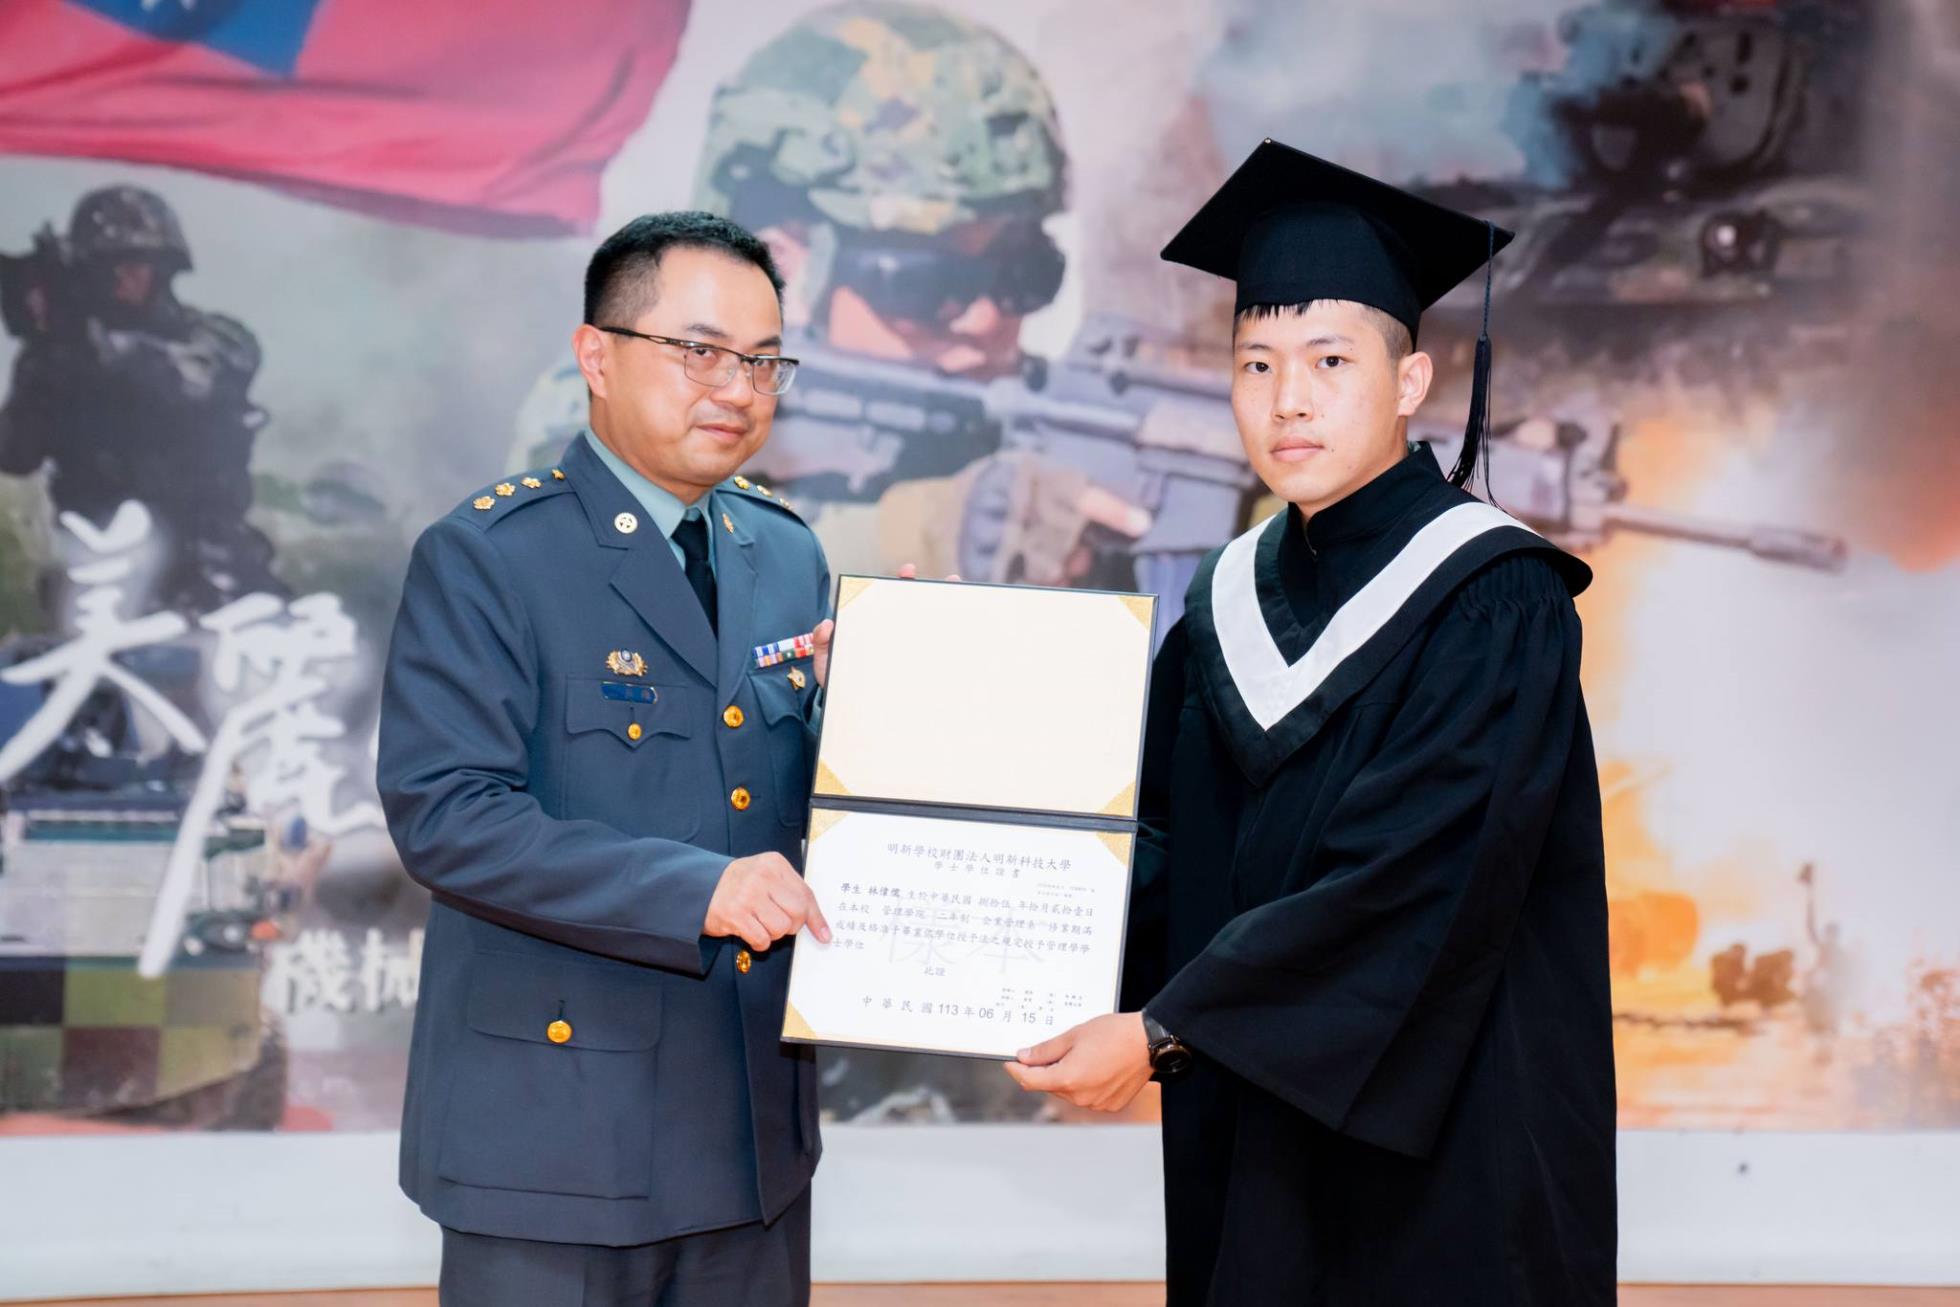 022陸軍269旅副旅長張上校頒發畢業證書予畢業生林偉儒同學